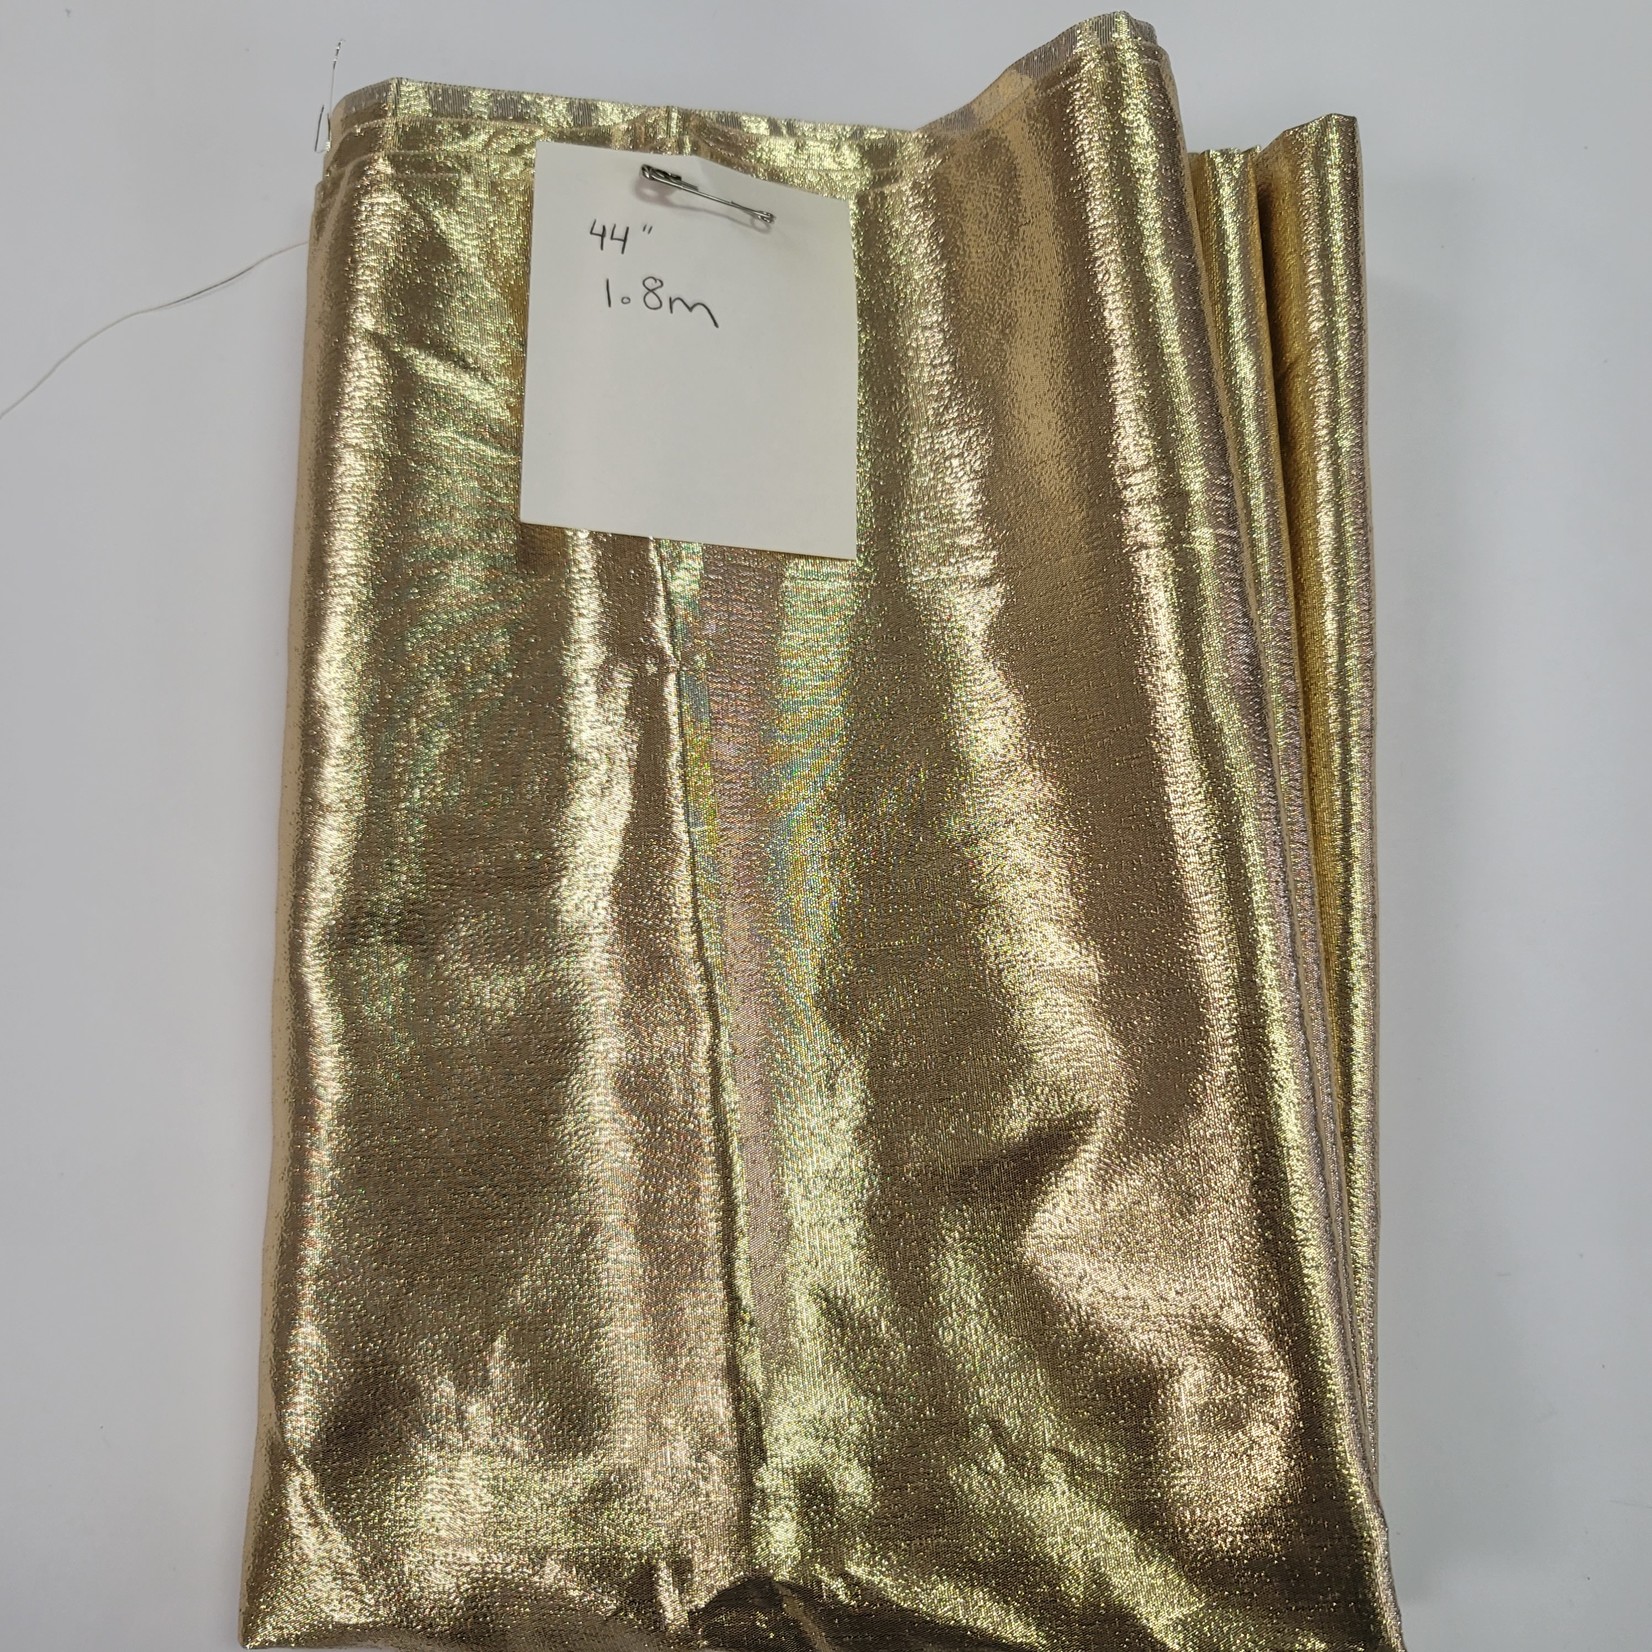 Gold Fabric - 44" x 1.8m